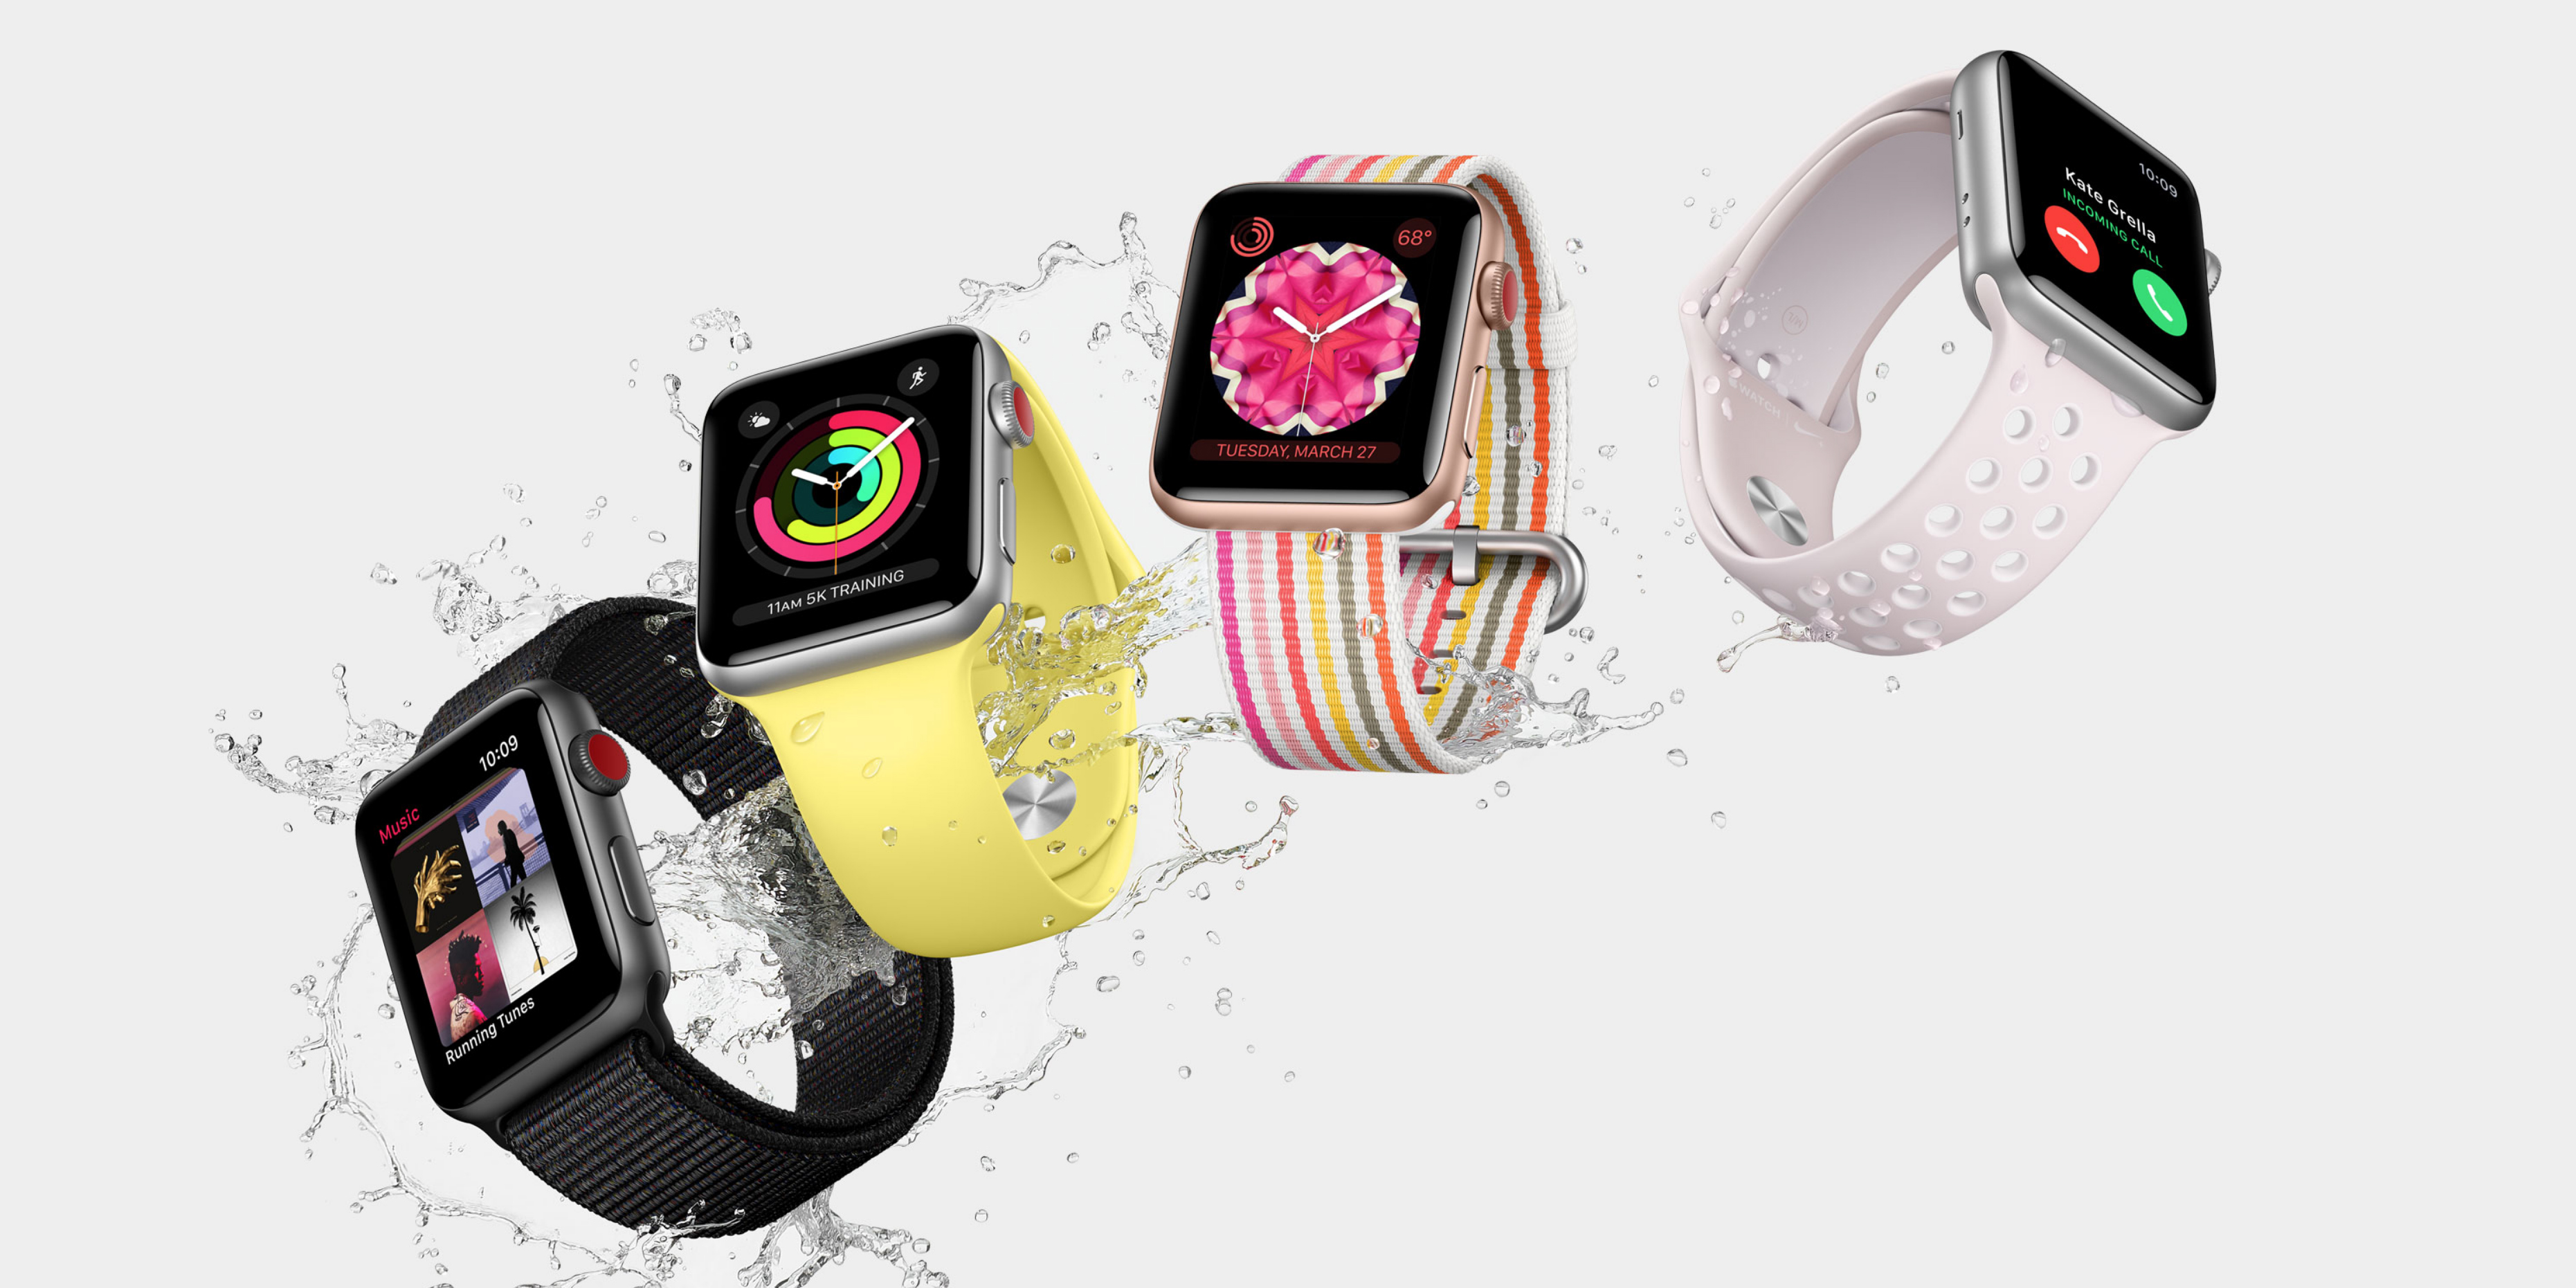 best buy apple watch series 5